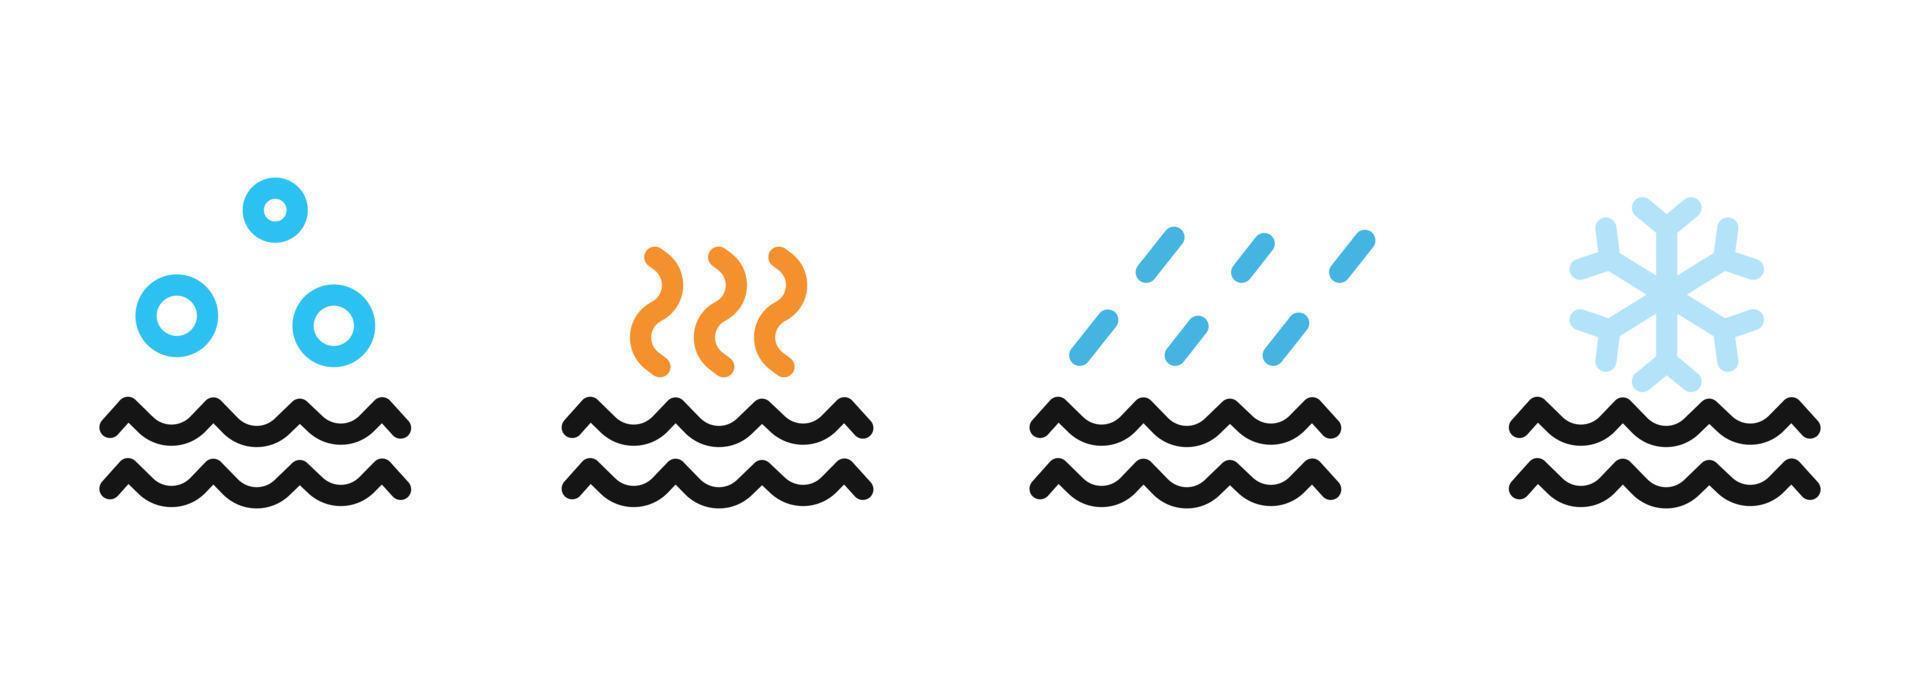 uppsättning av olika vatten ikon design. enkel väder symbol för design element vektor